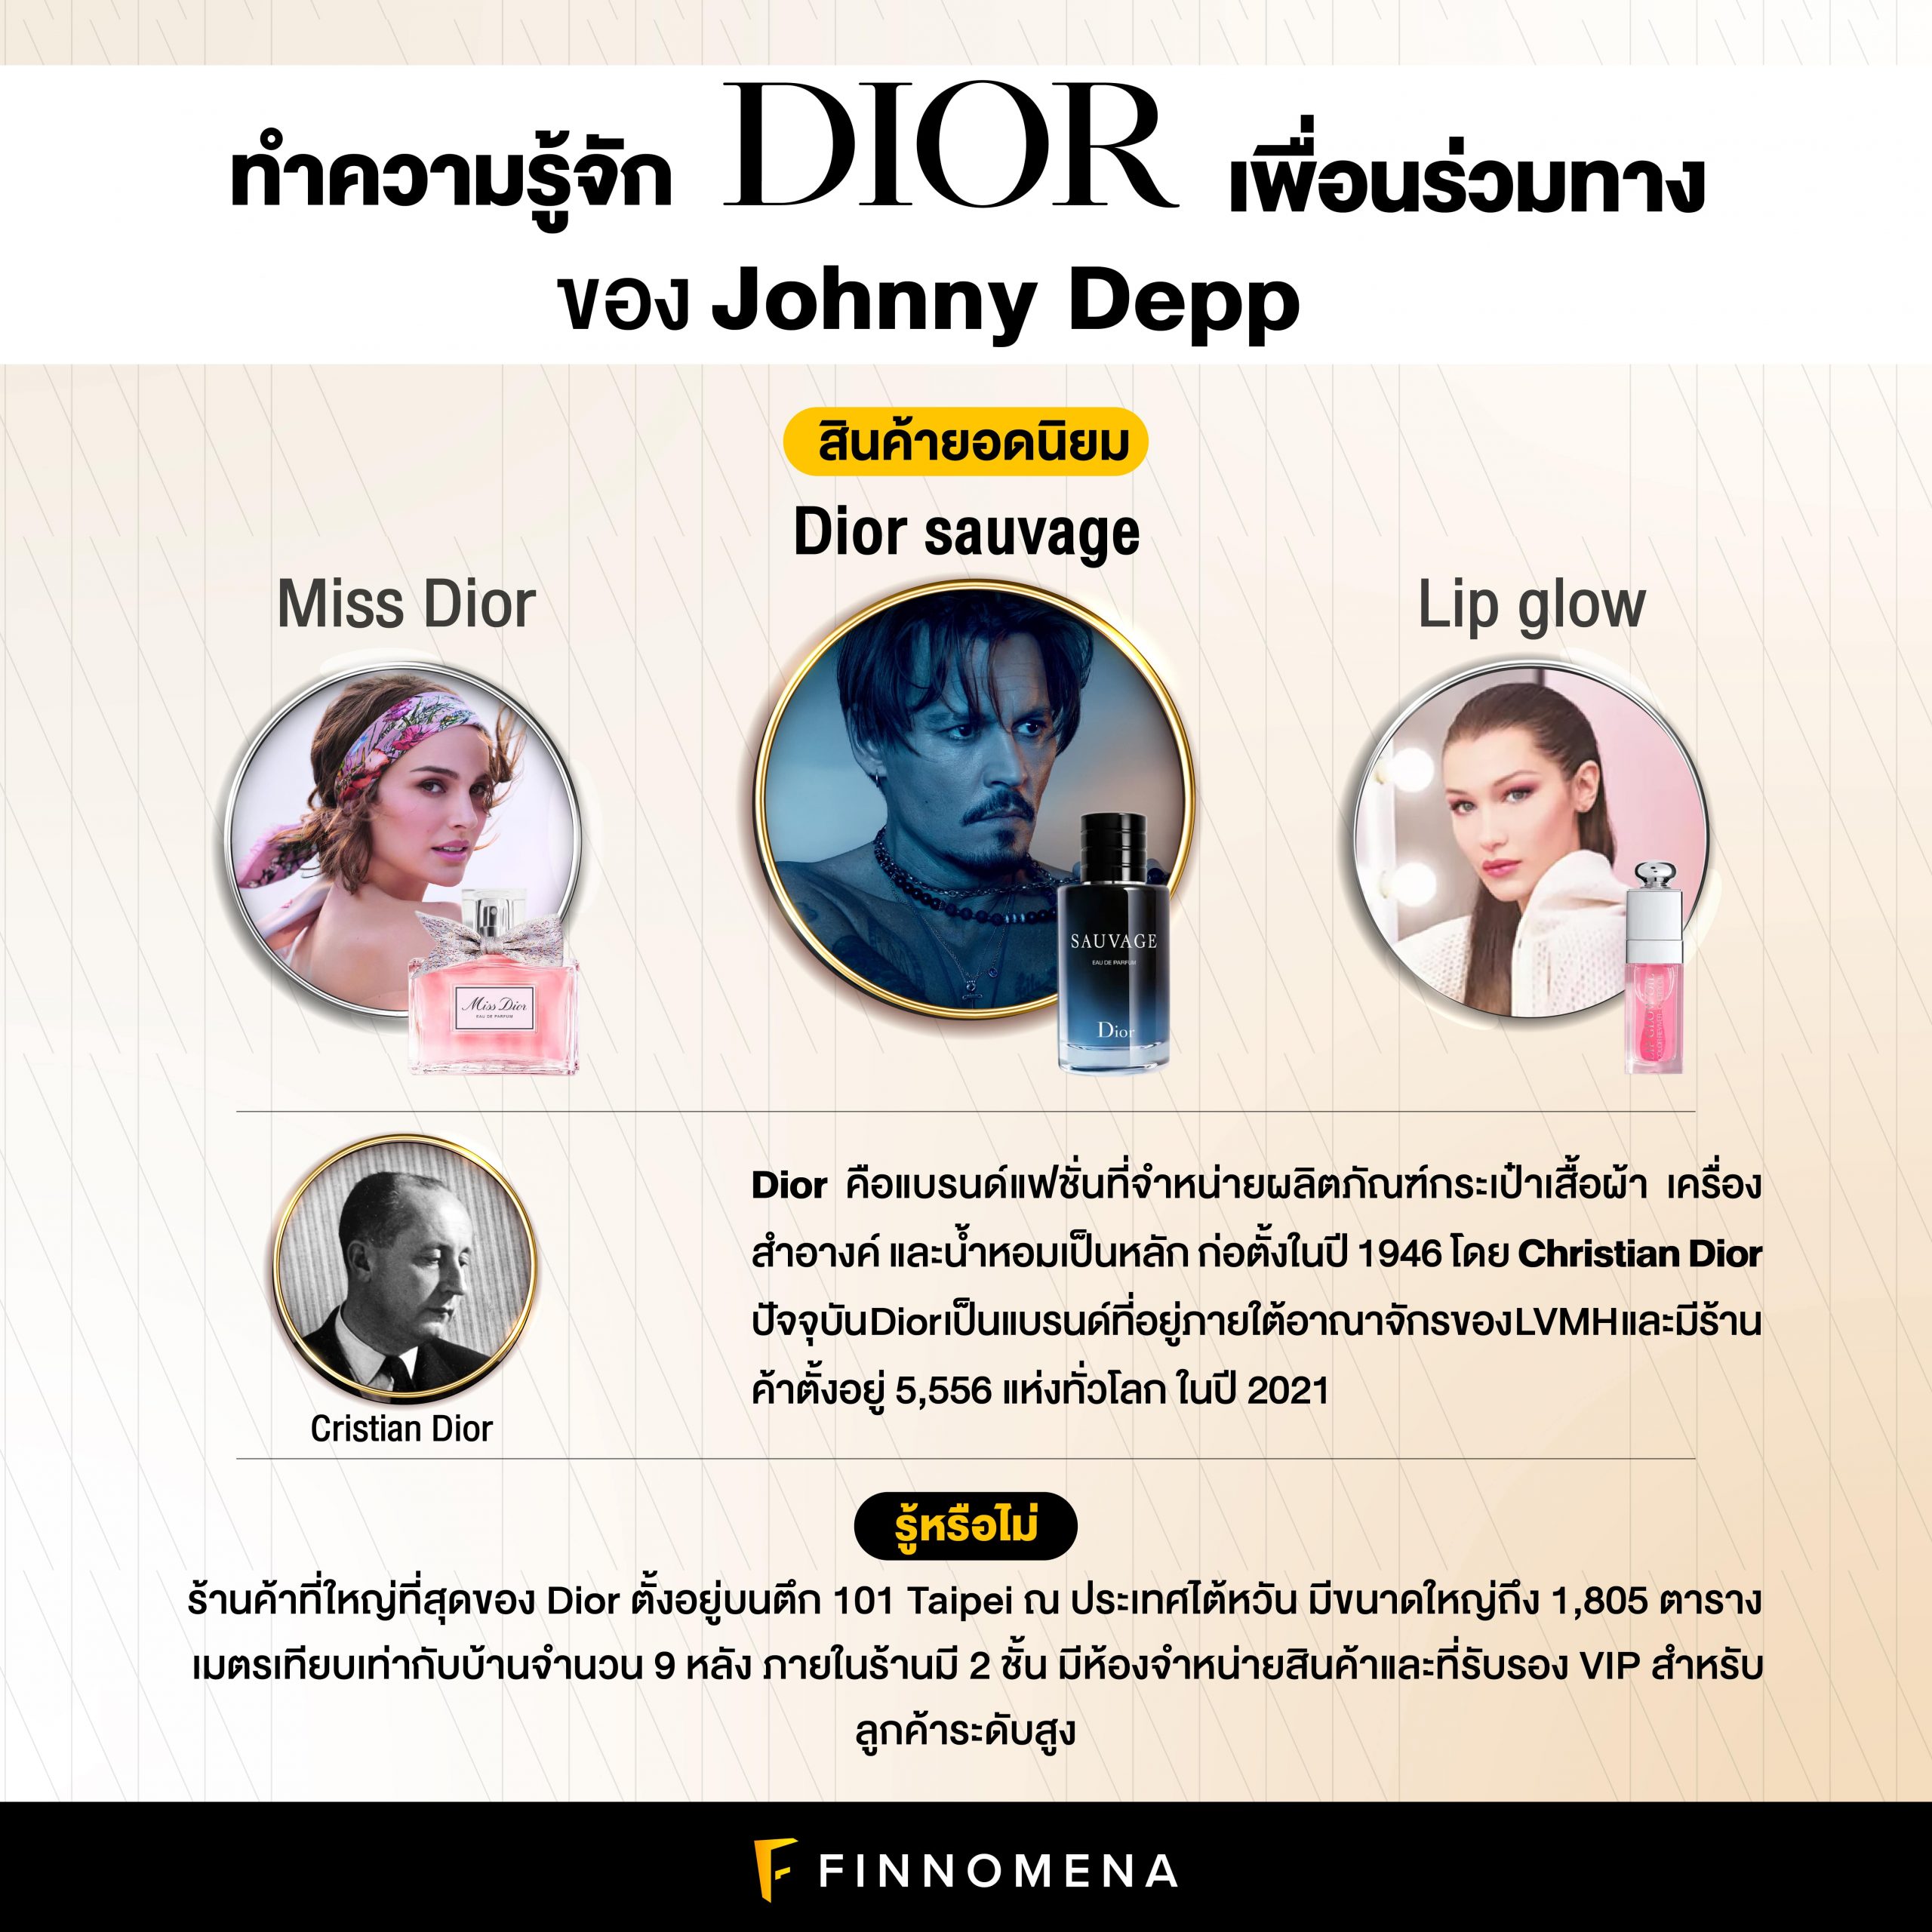 ทำความรู้จัก Dior เพื่อนร่วมทางของ Johnny Depp